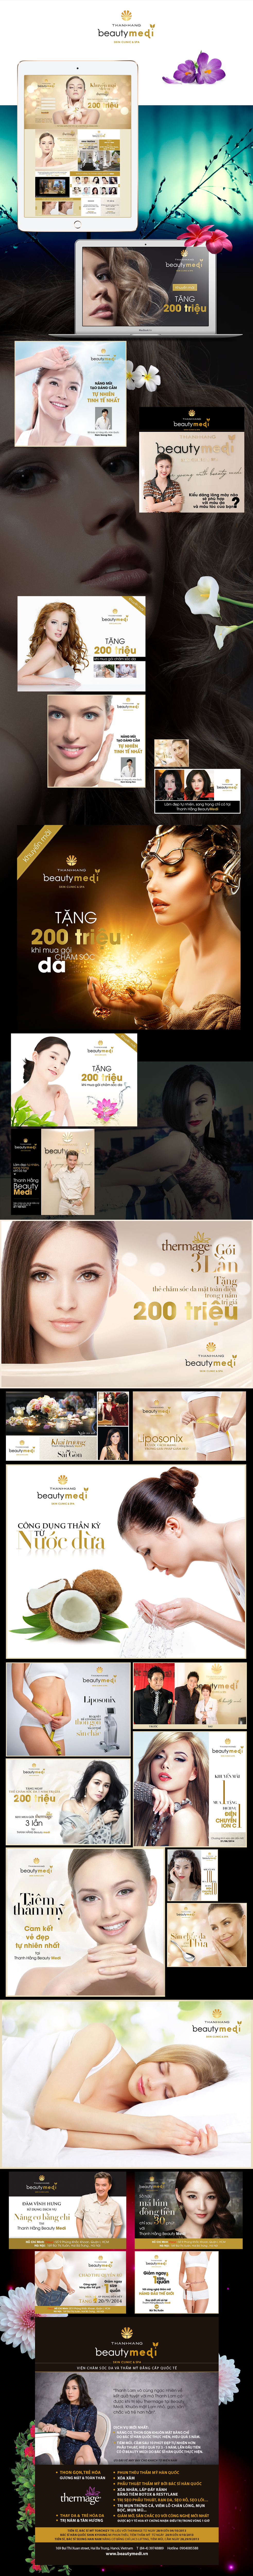 Dự án Thanh Hang Beauty Medi